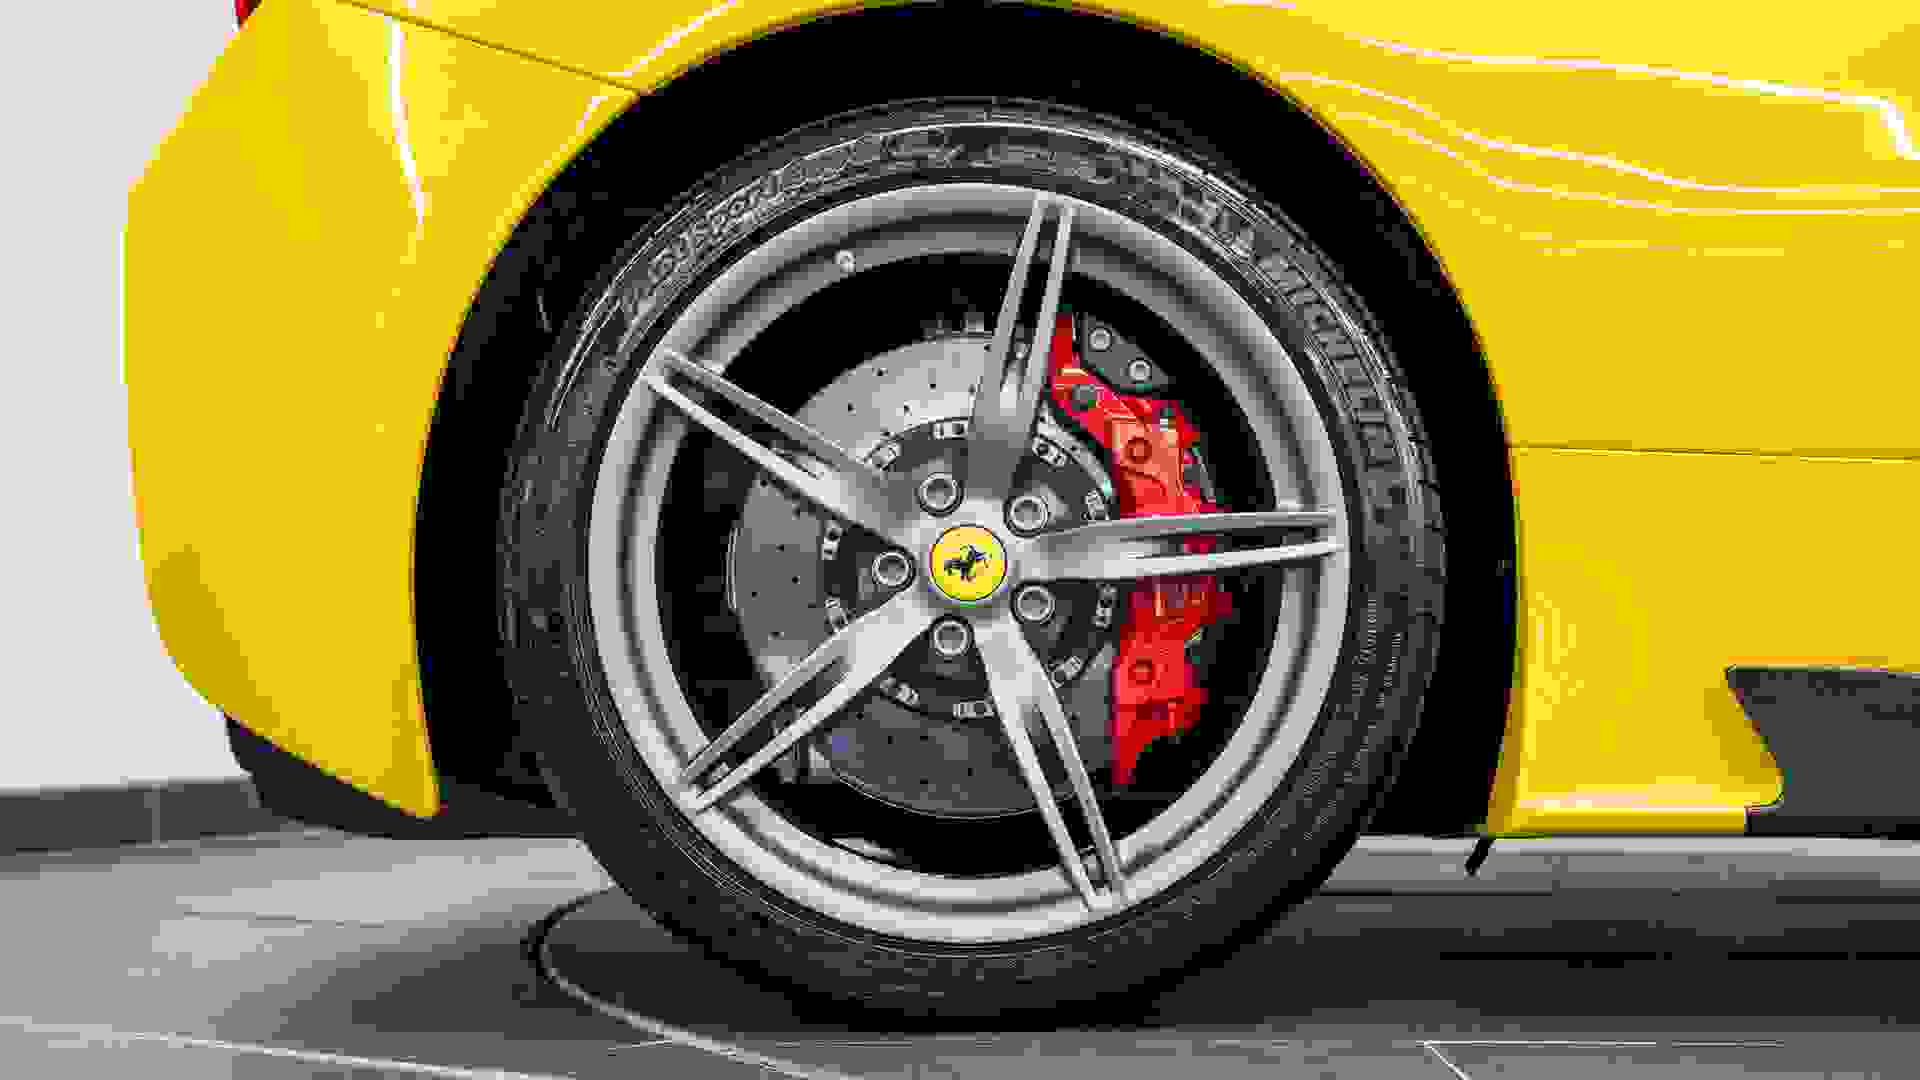 Ferrari 458 Photo b140f147-1817-43f5-9385-c71c917f2866.jpg